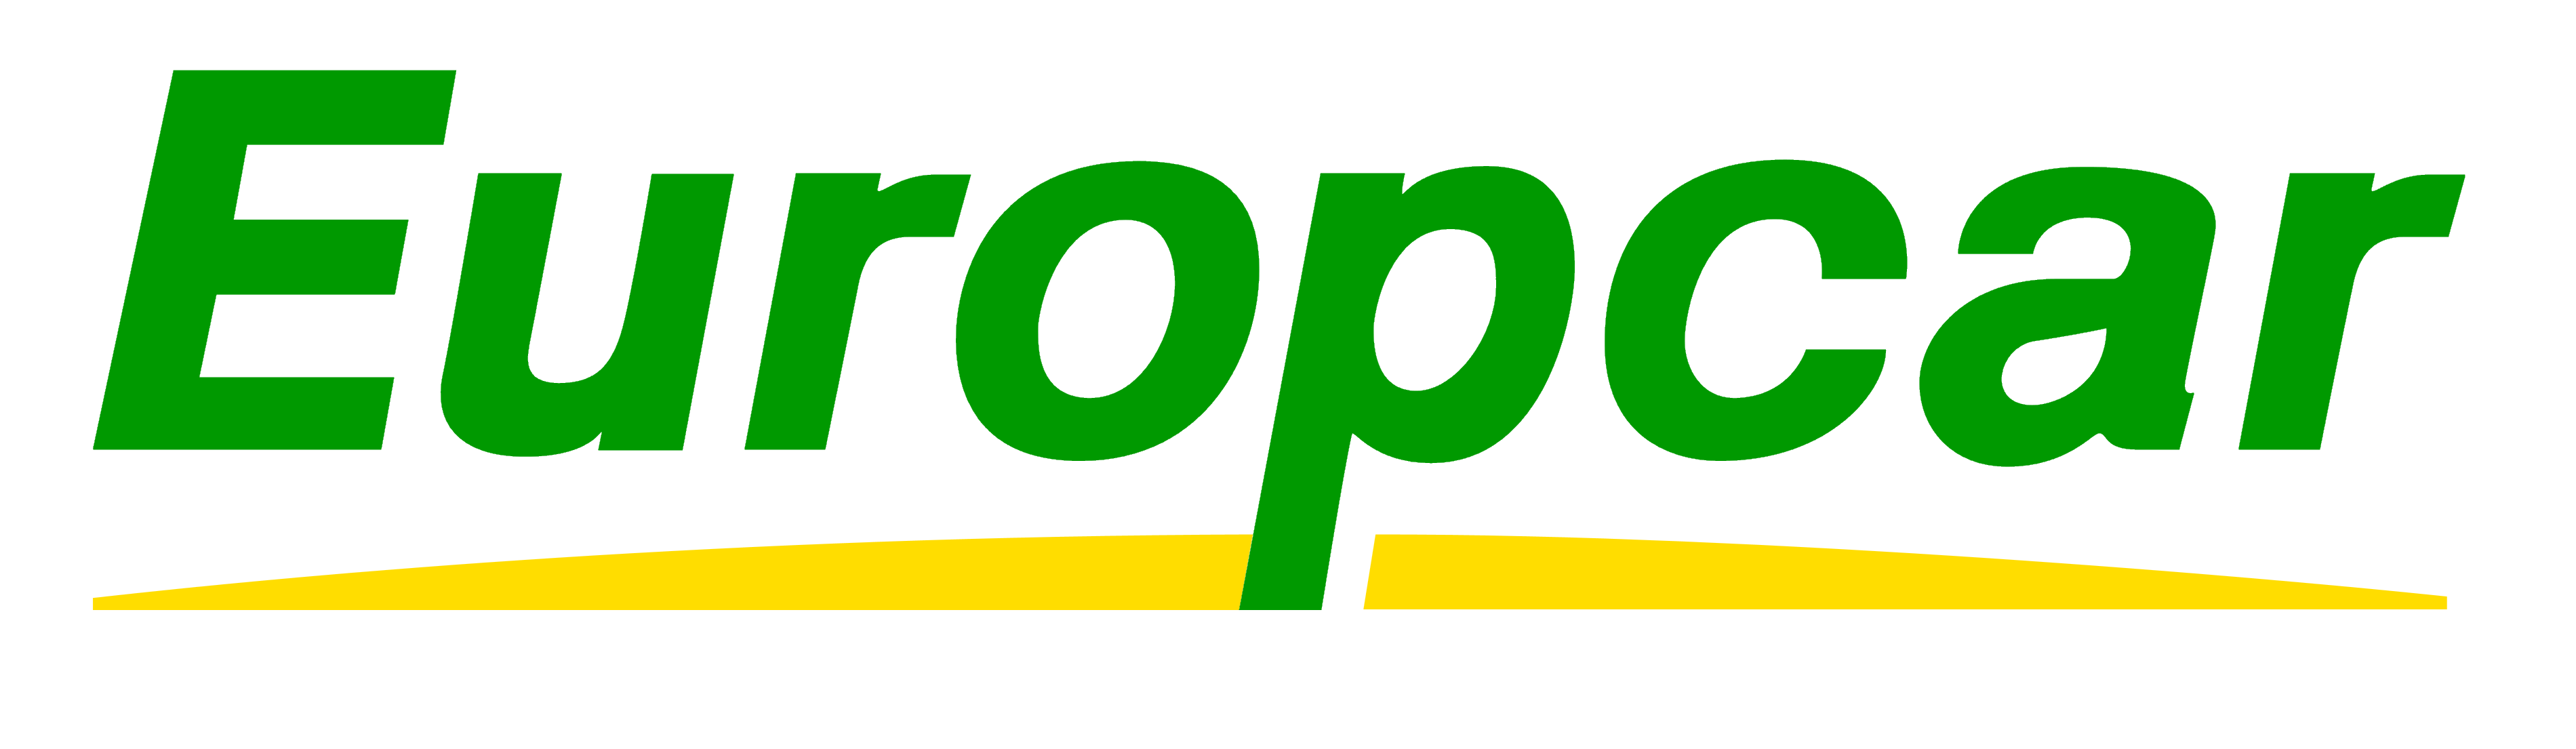 Europcar logo, logotype